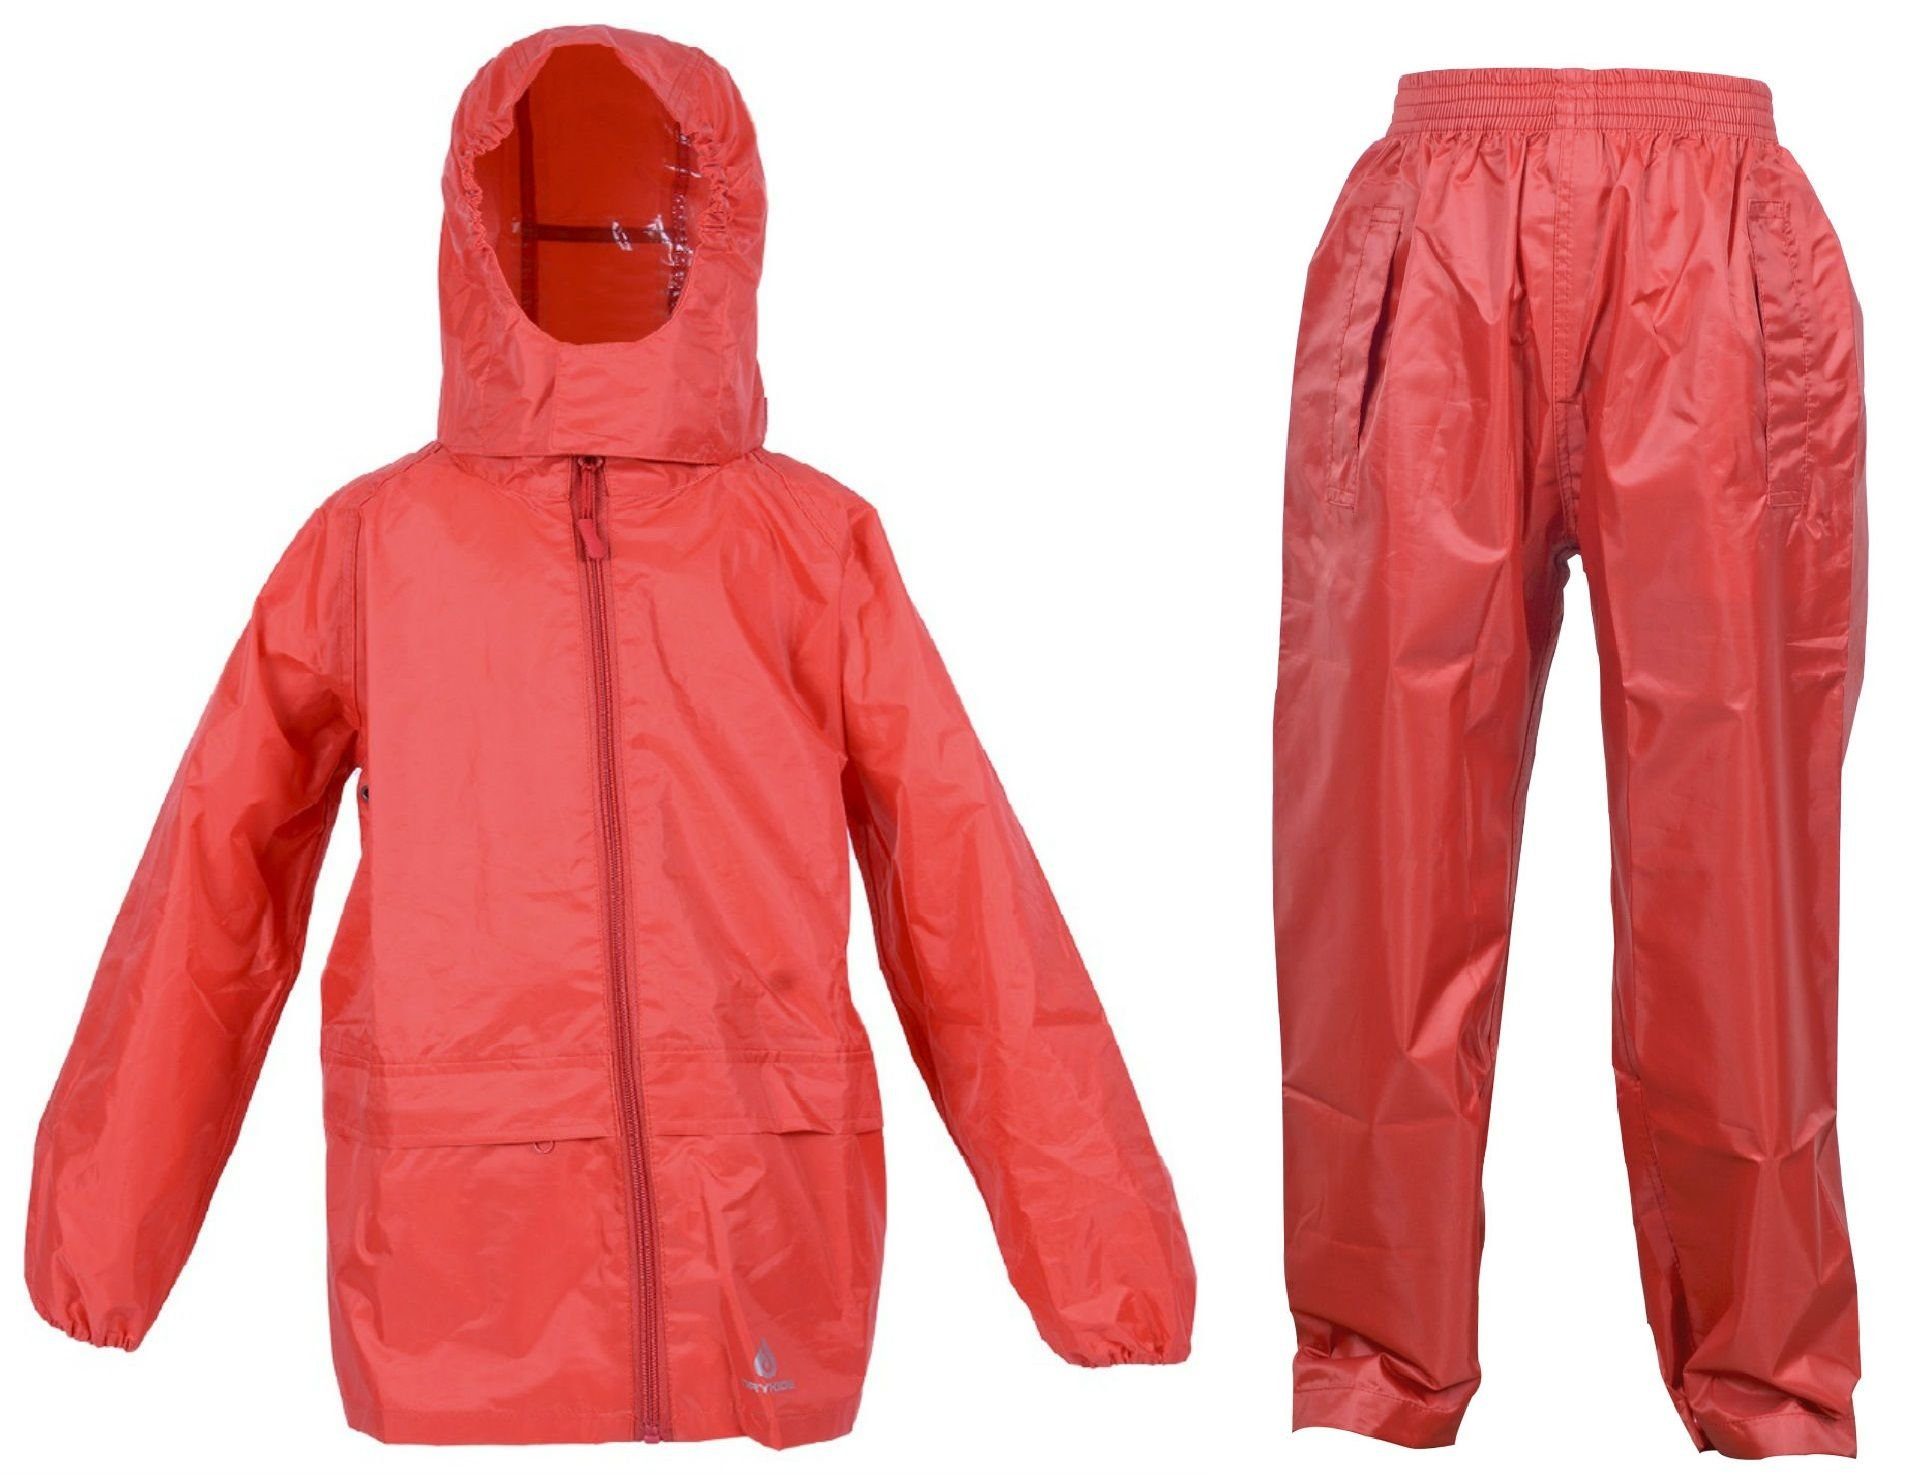 Regenanzug reflektierende (1-tlg), Wasserdichtes Regenbekleidung DRY KIDS Kinder Regenanzug-Set, Rot